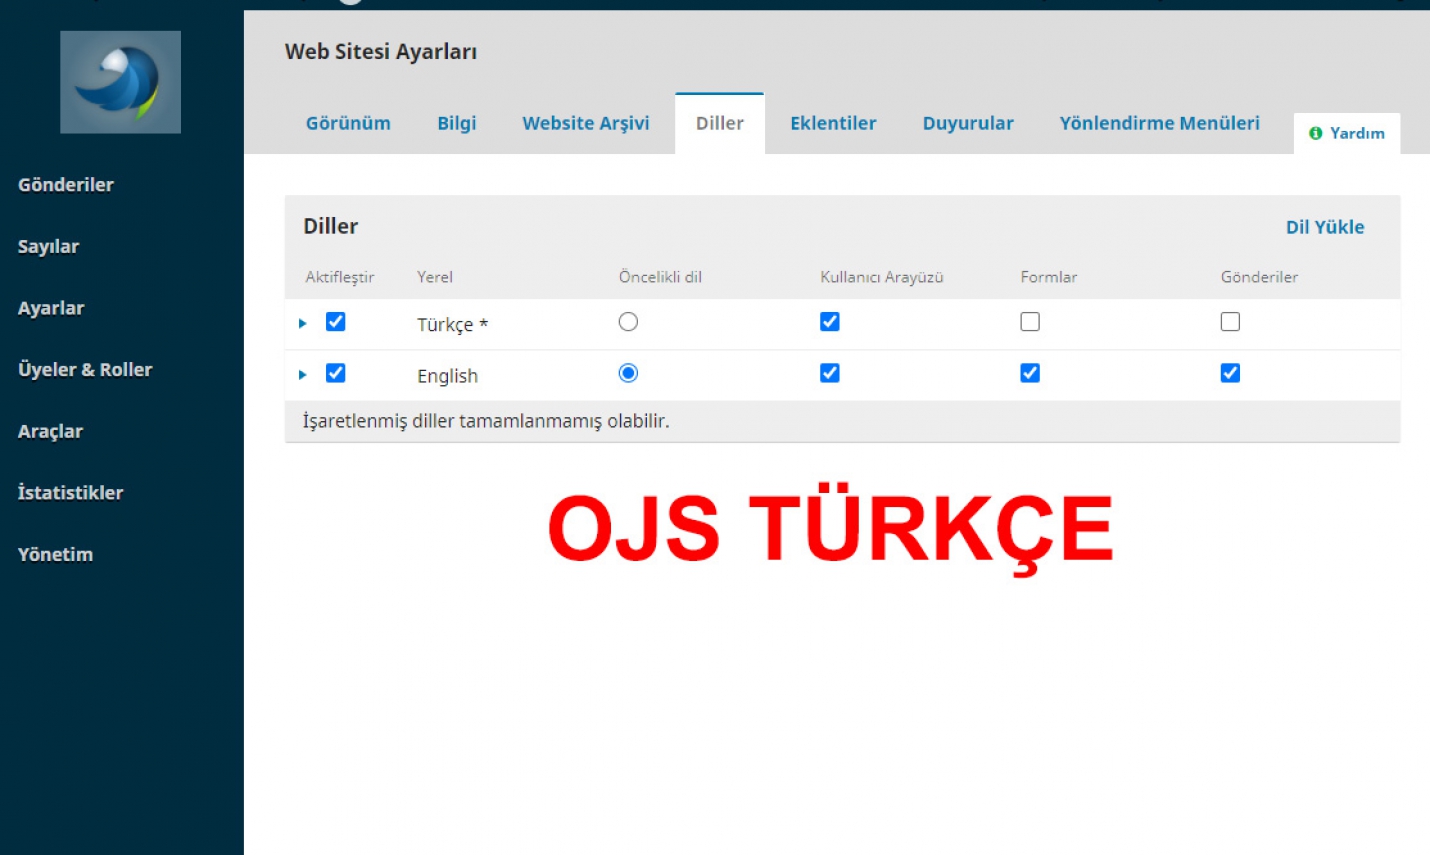 OJS (Açık Dergi sistemi) Türkçe Dil Seçeneği Kurulumu ve Hata Giderme